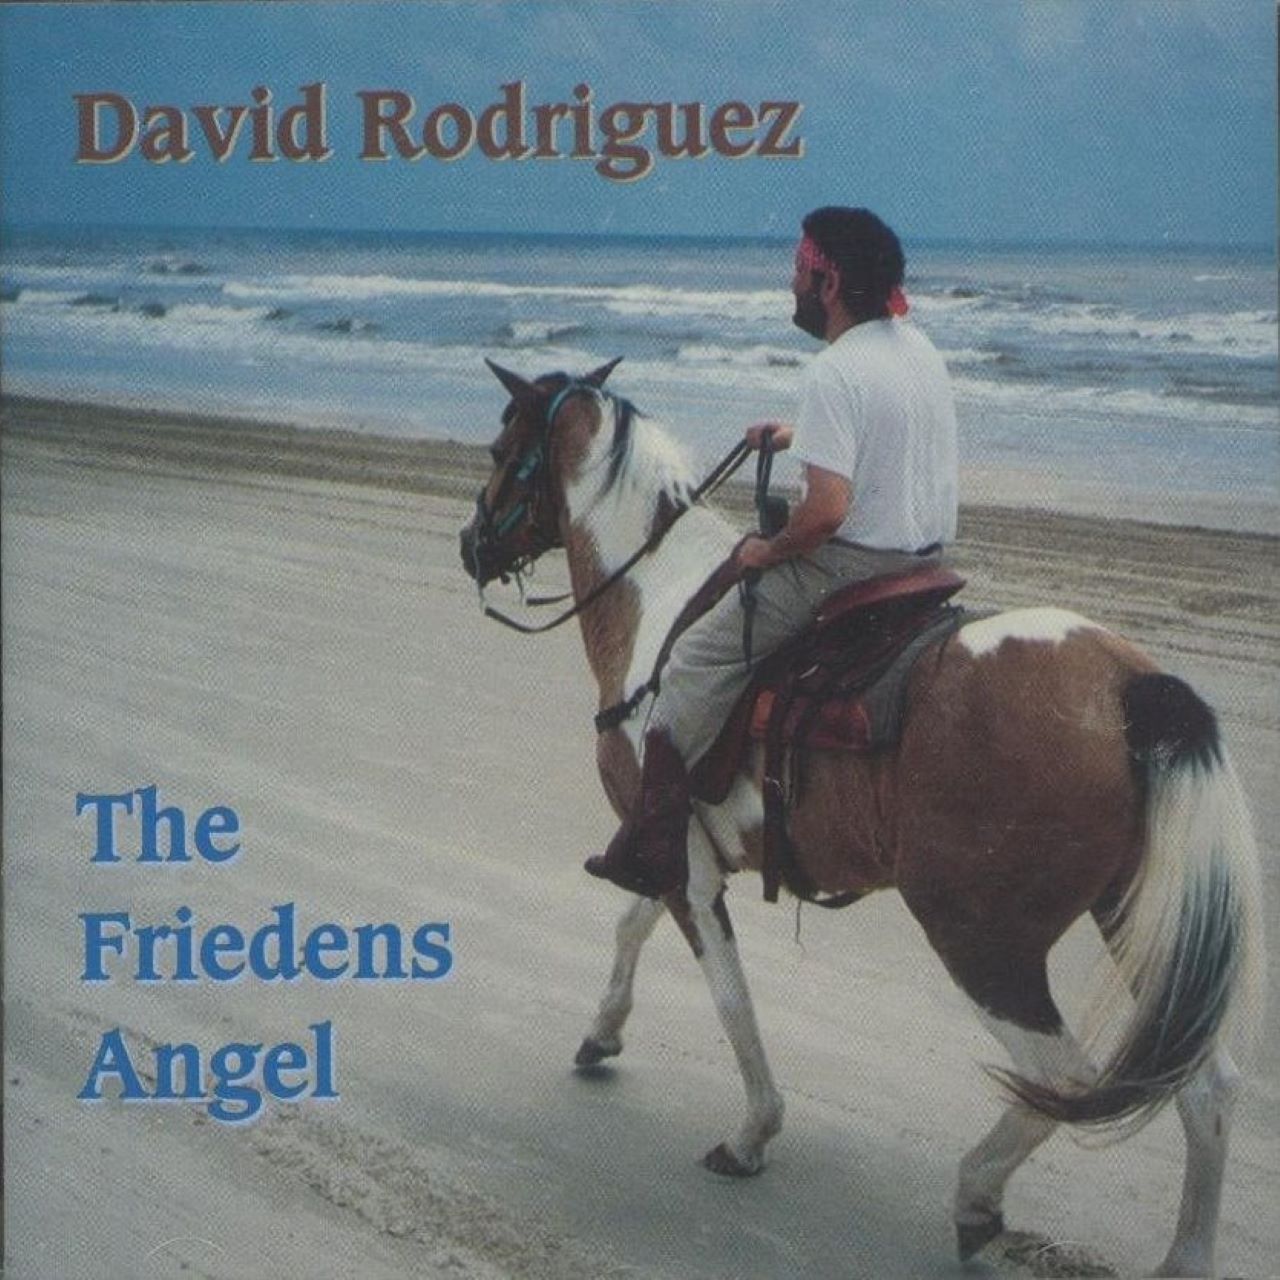 David Rodriguez - The Friedens Angel cover album